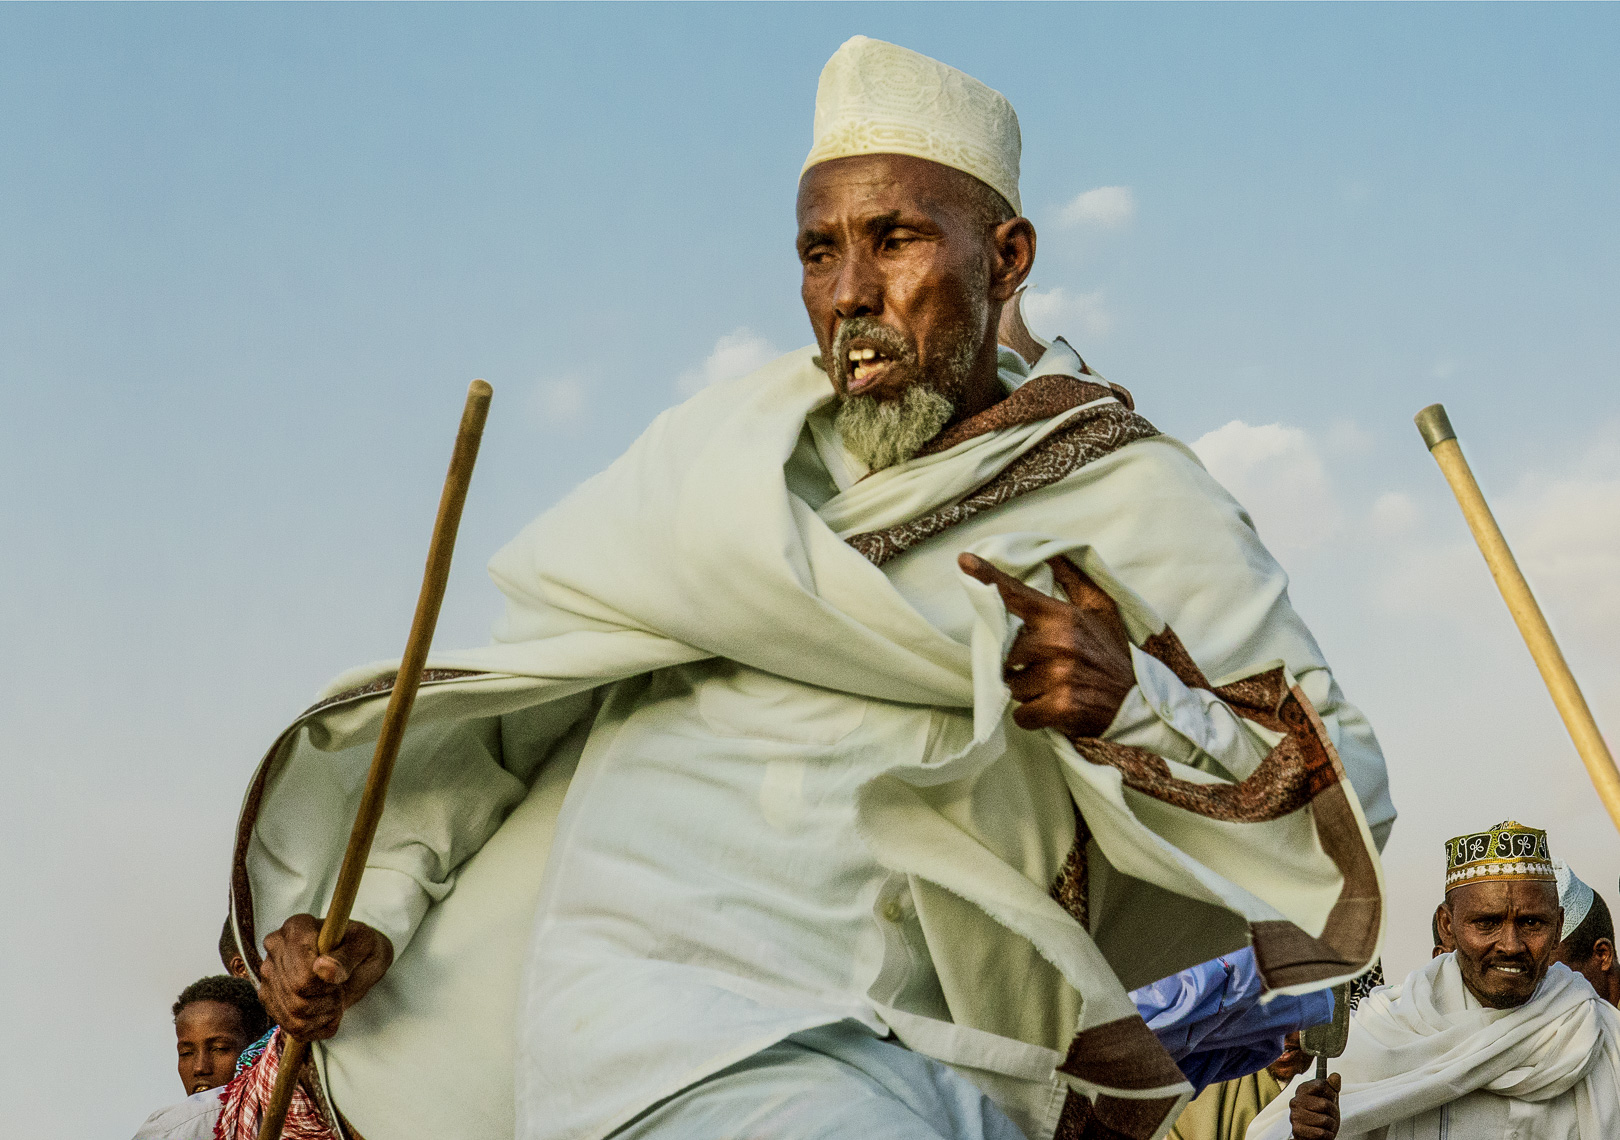 Somali Dancer, Somaliland